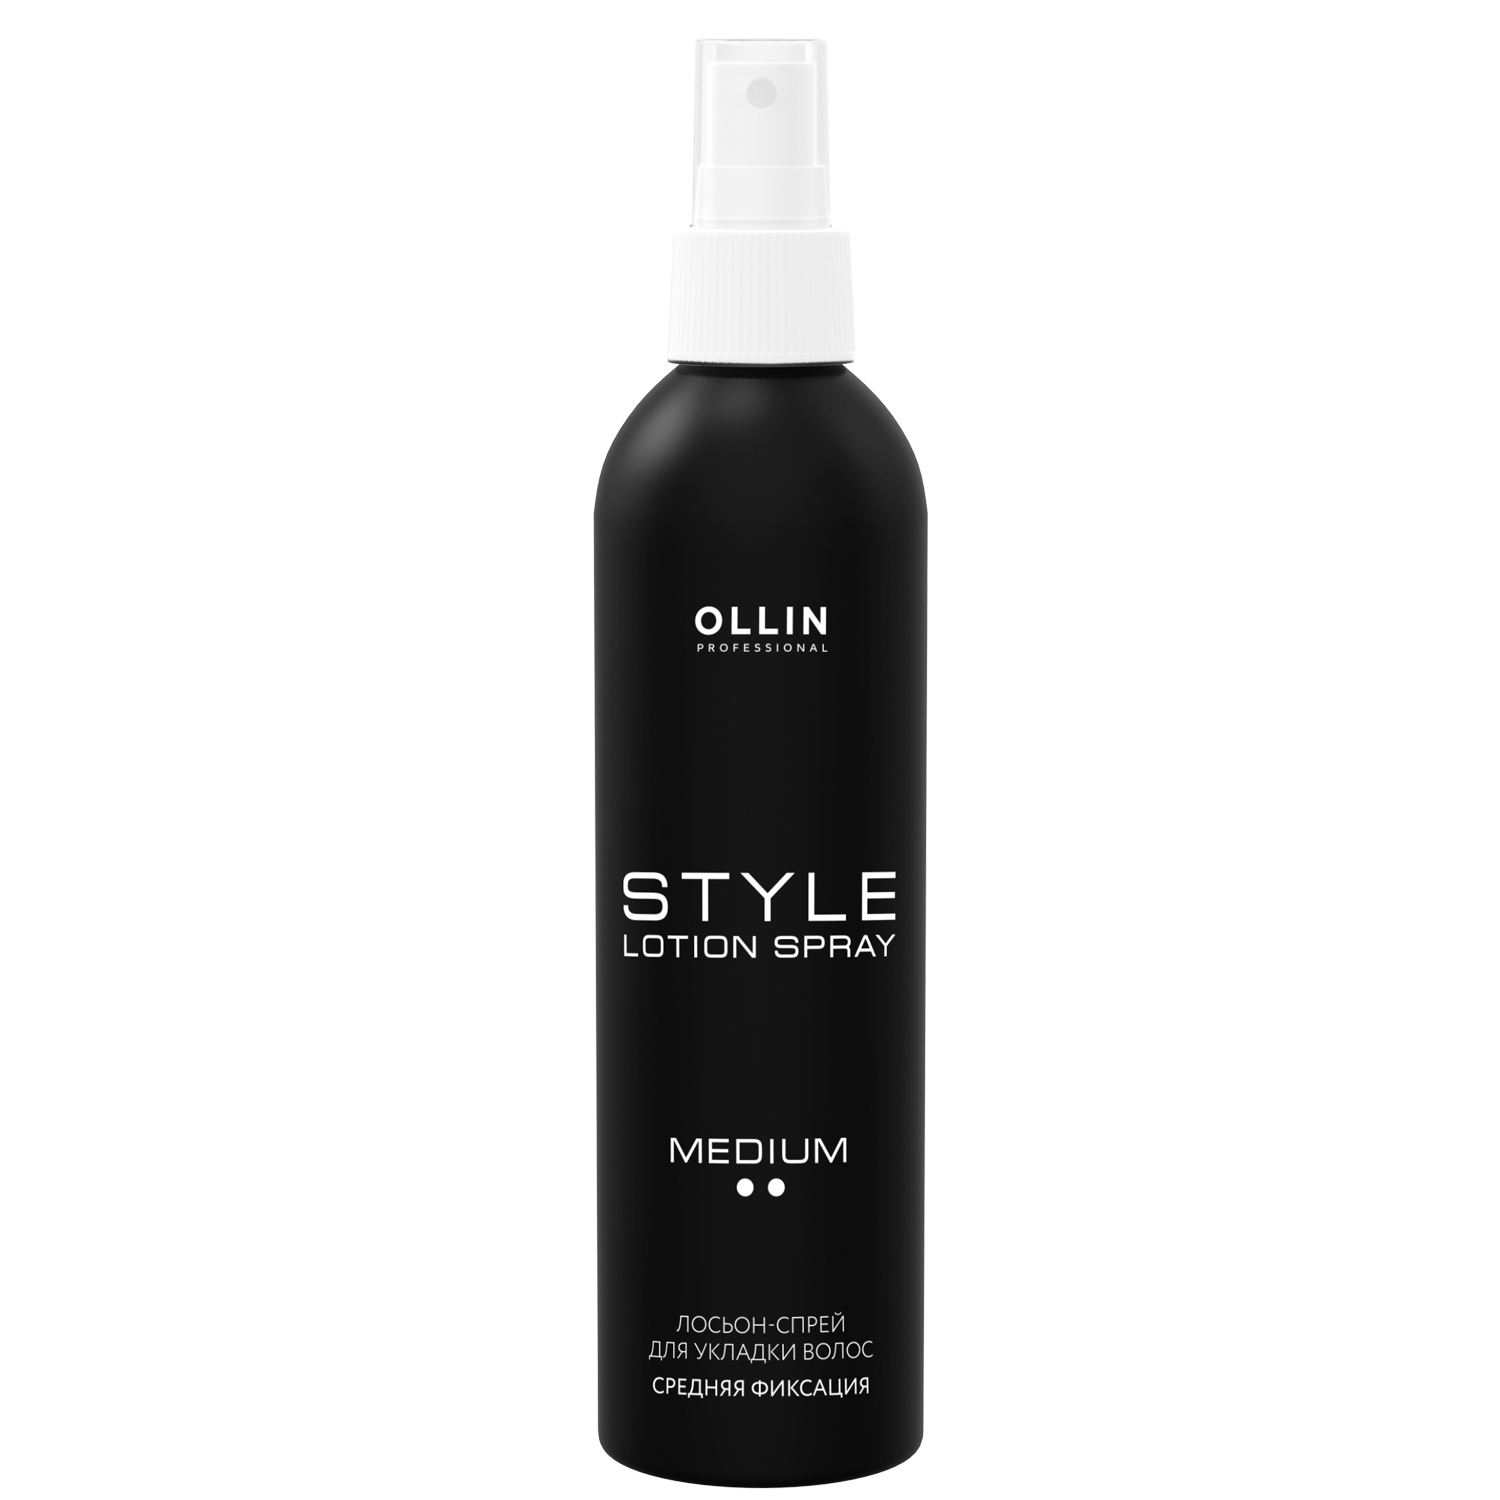 Ollin Professional Лосьон-спрей для укладки волос средней фиксации, 250 мл (Ollin Professional, Style) лосьон спрей для укладки средней фиксации ollin professional style 250 мл